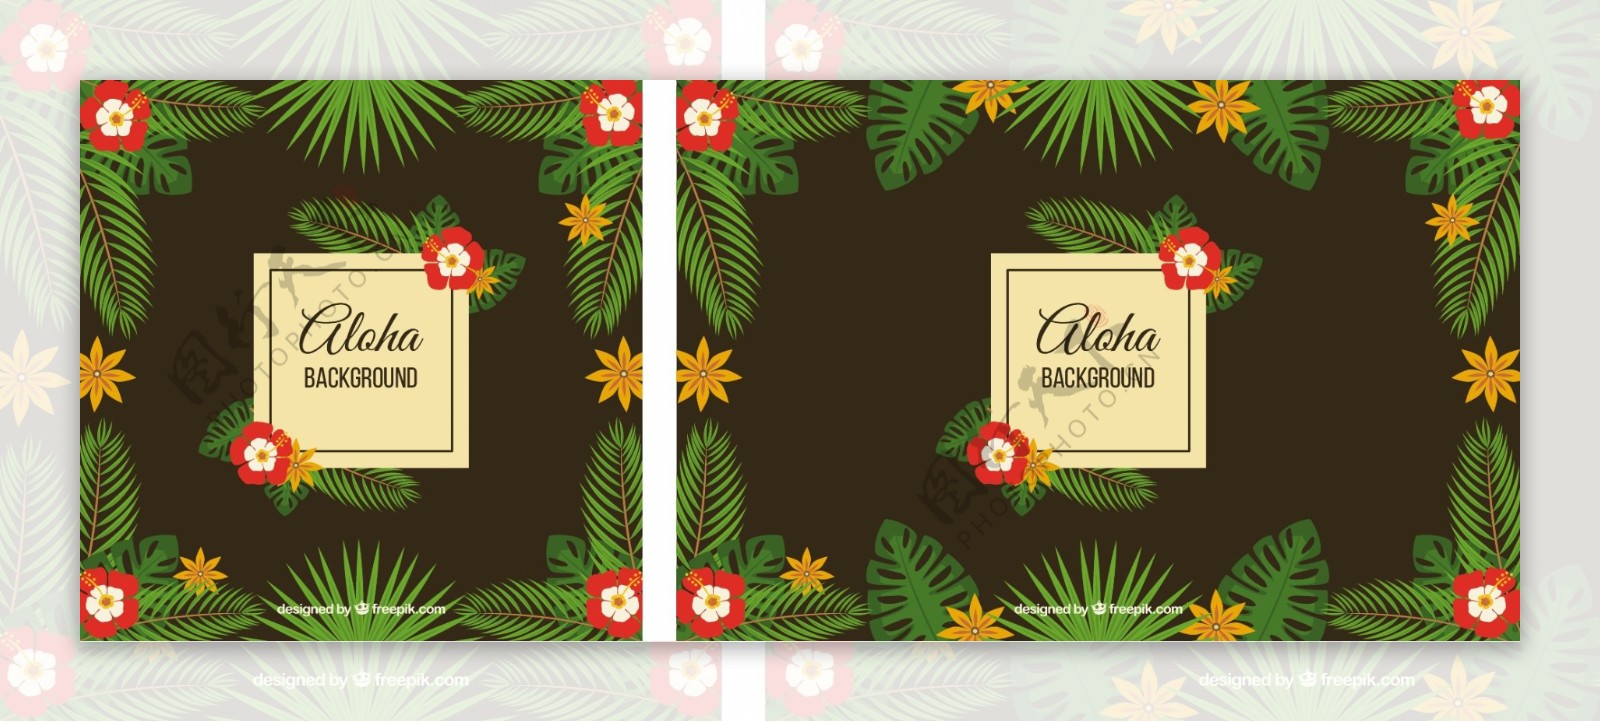 老式的ALOHA背景用鲜花和棕榈叶